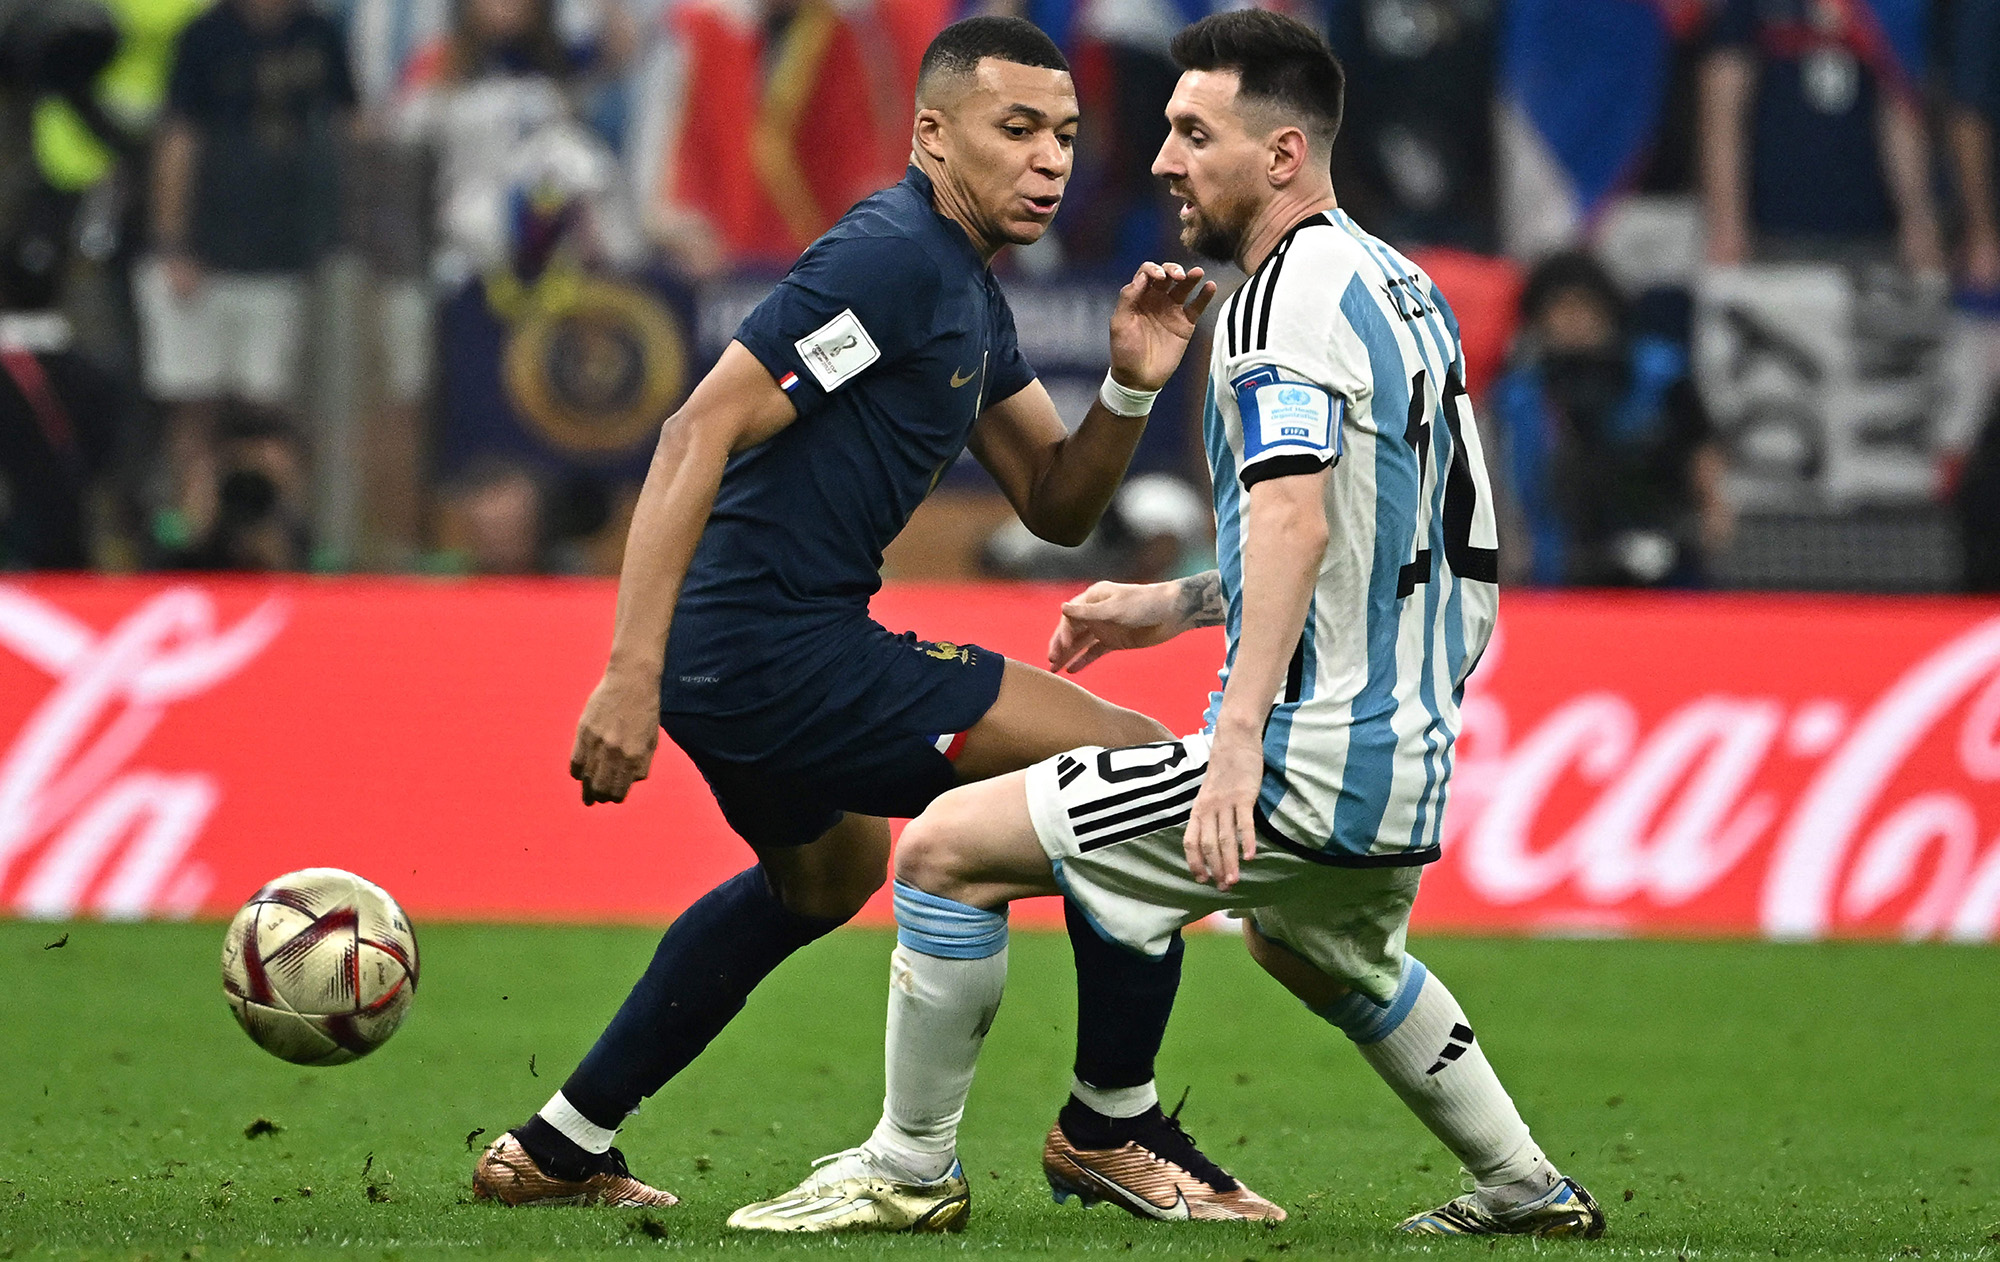 Аргентина в серії пенальті переграла збірну Франції та стала чемпіоном світу